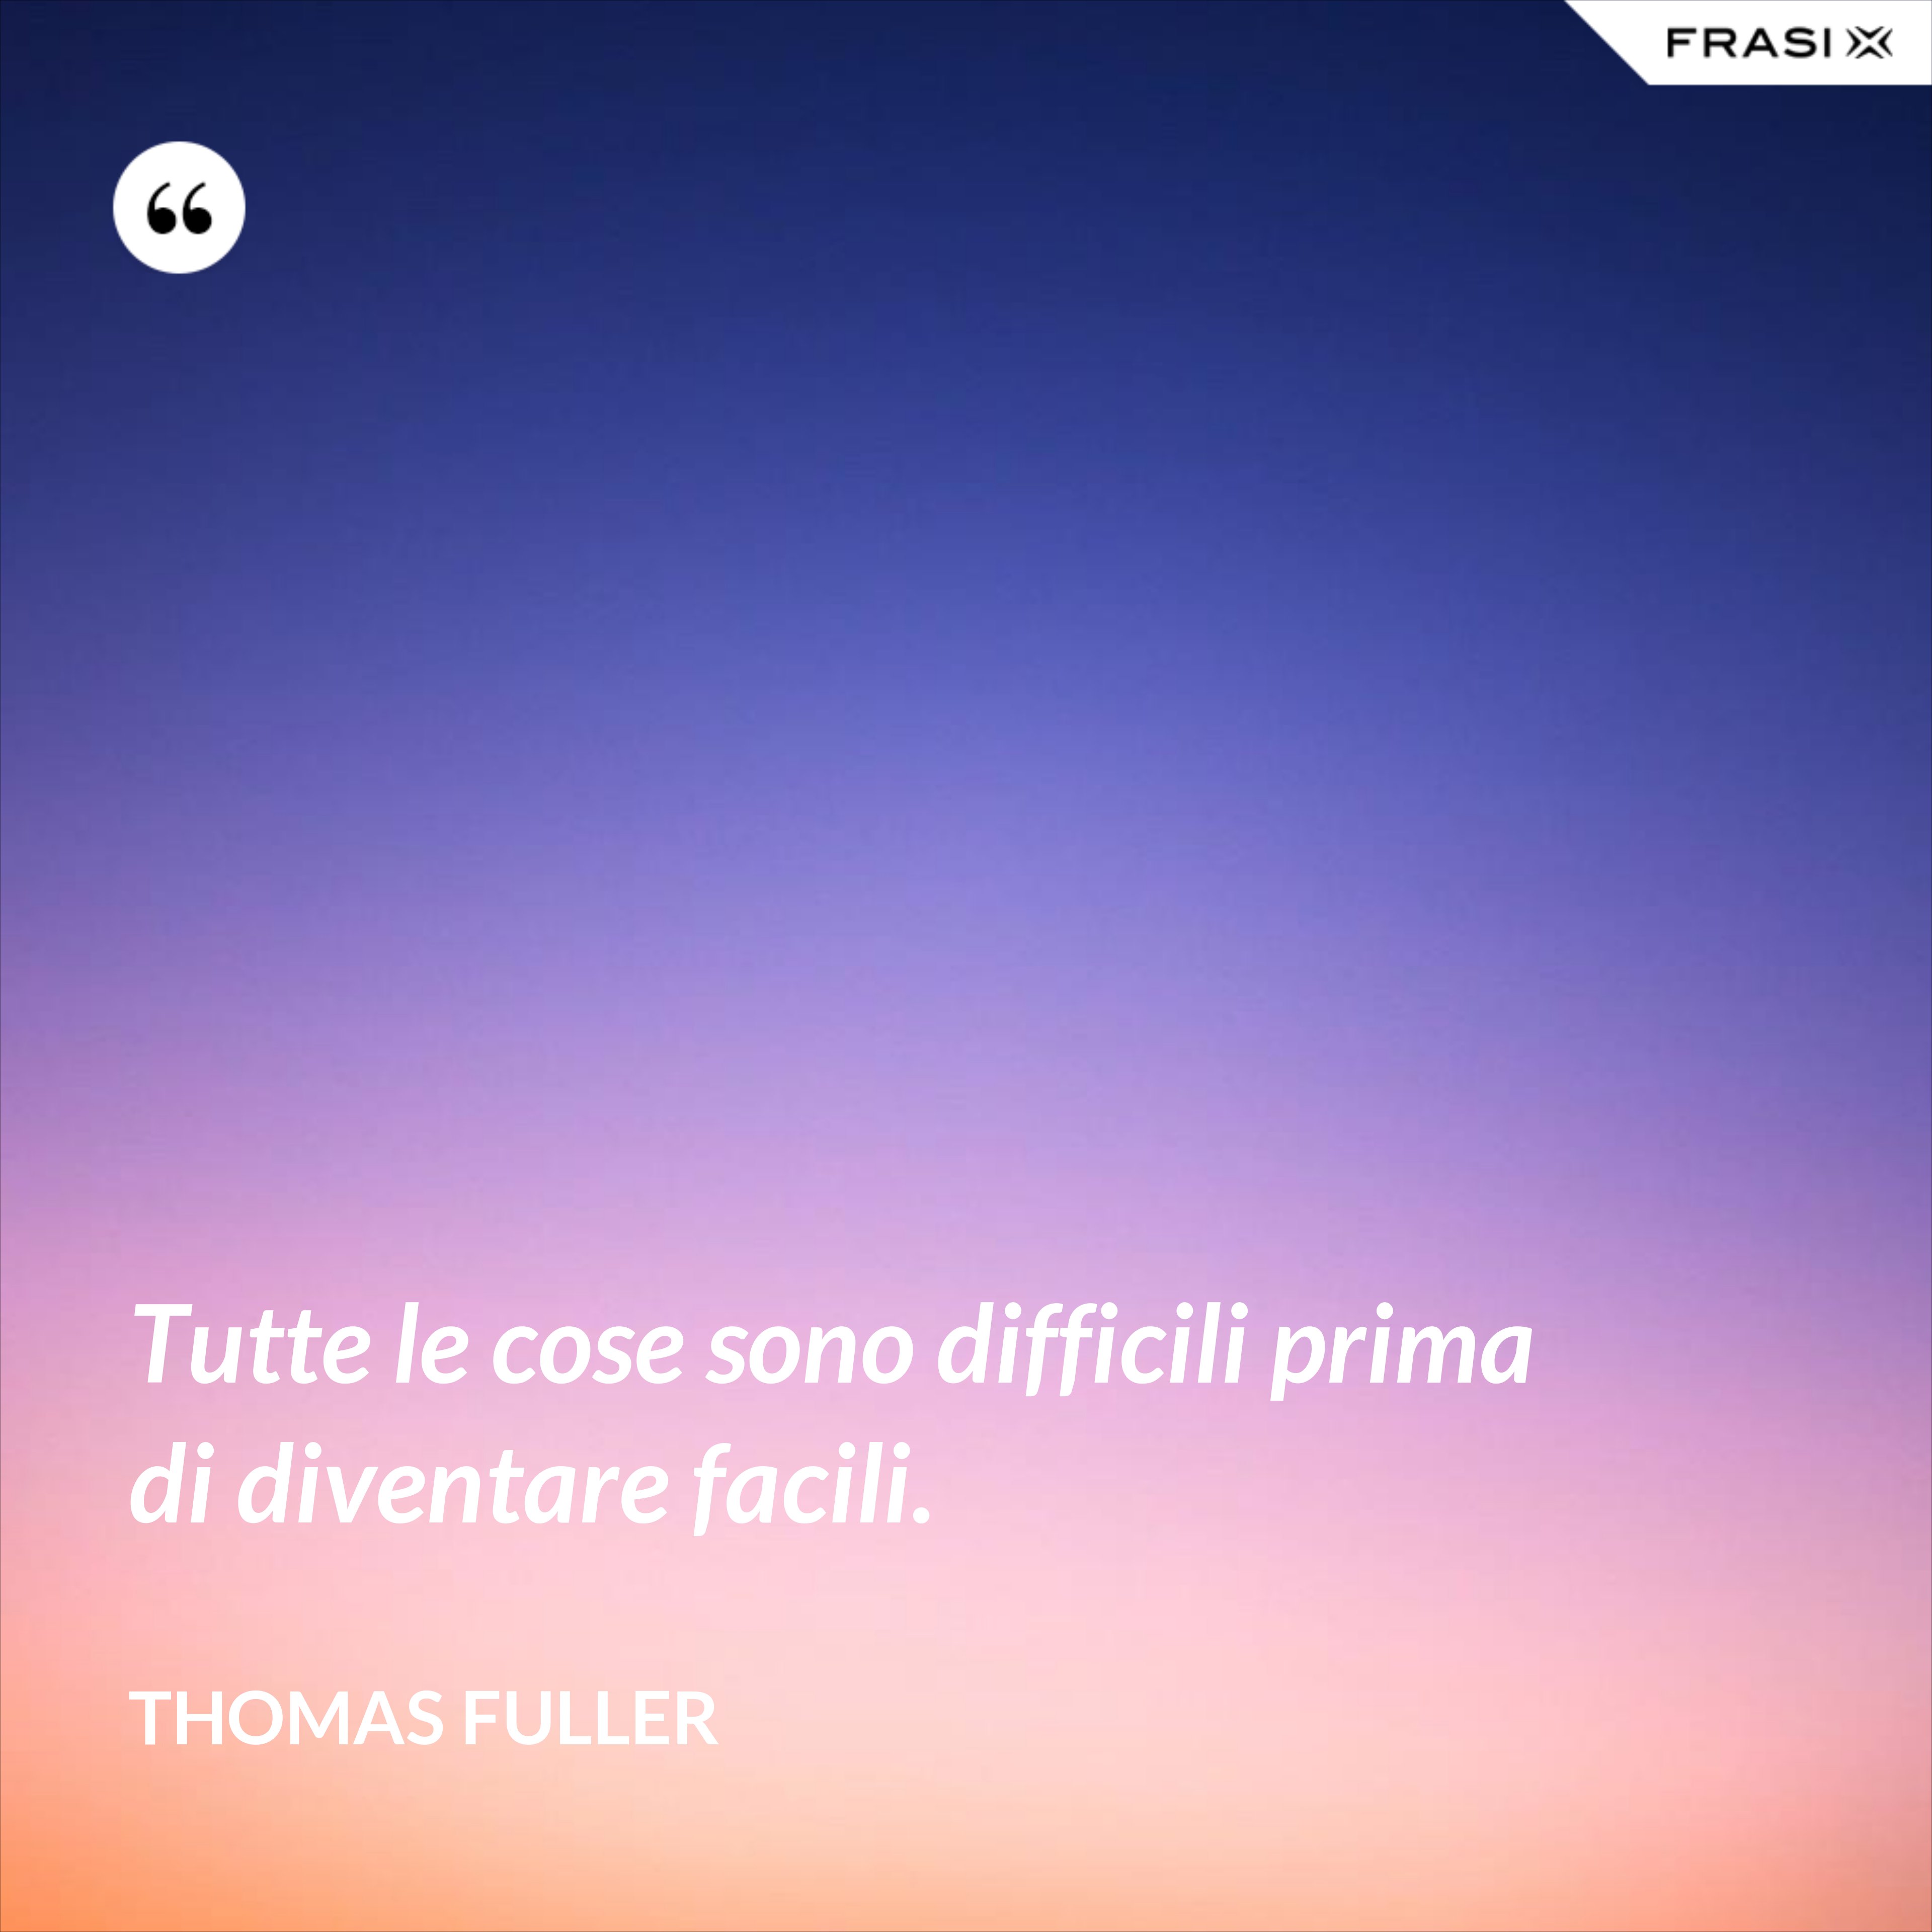 Tutte le cose sono difficili prima di diventare facili. - Thomas Fuller